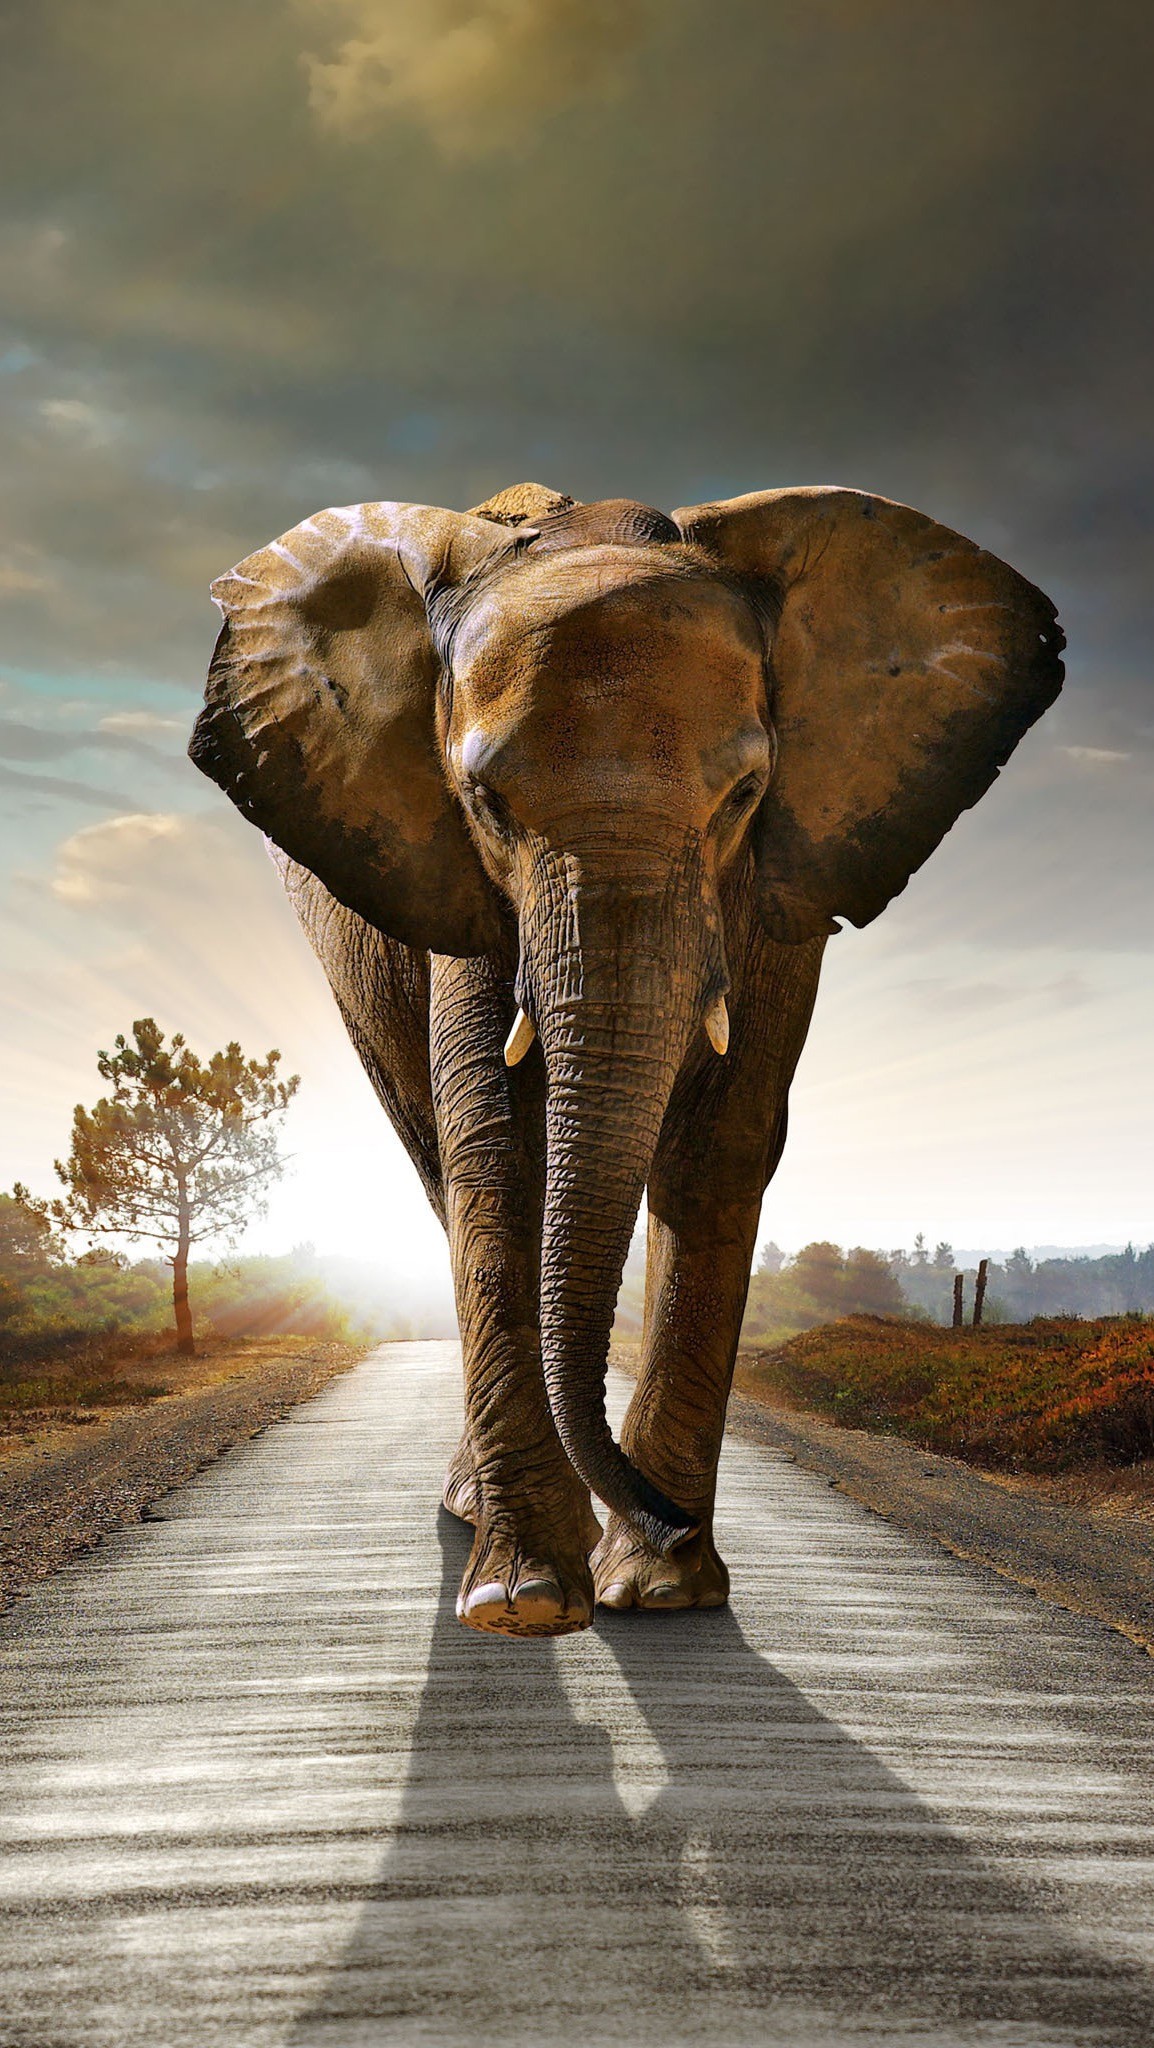 elefante fondo de pantalla para iphone,elefante,elefantes y mamuts,elefante indio,elefante africano,animal terrestre